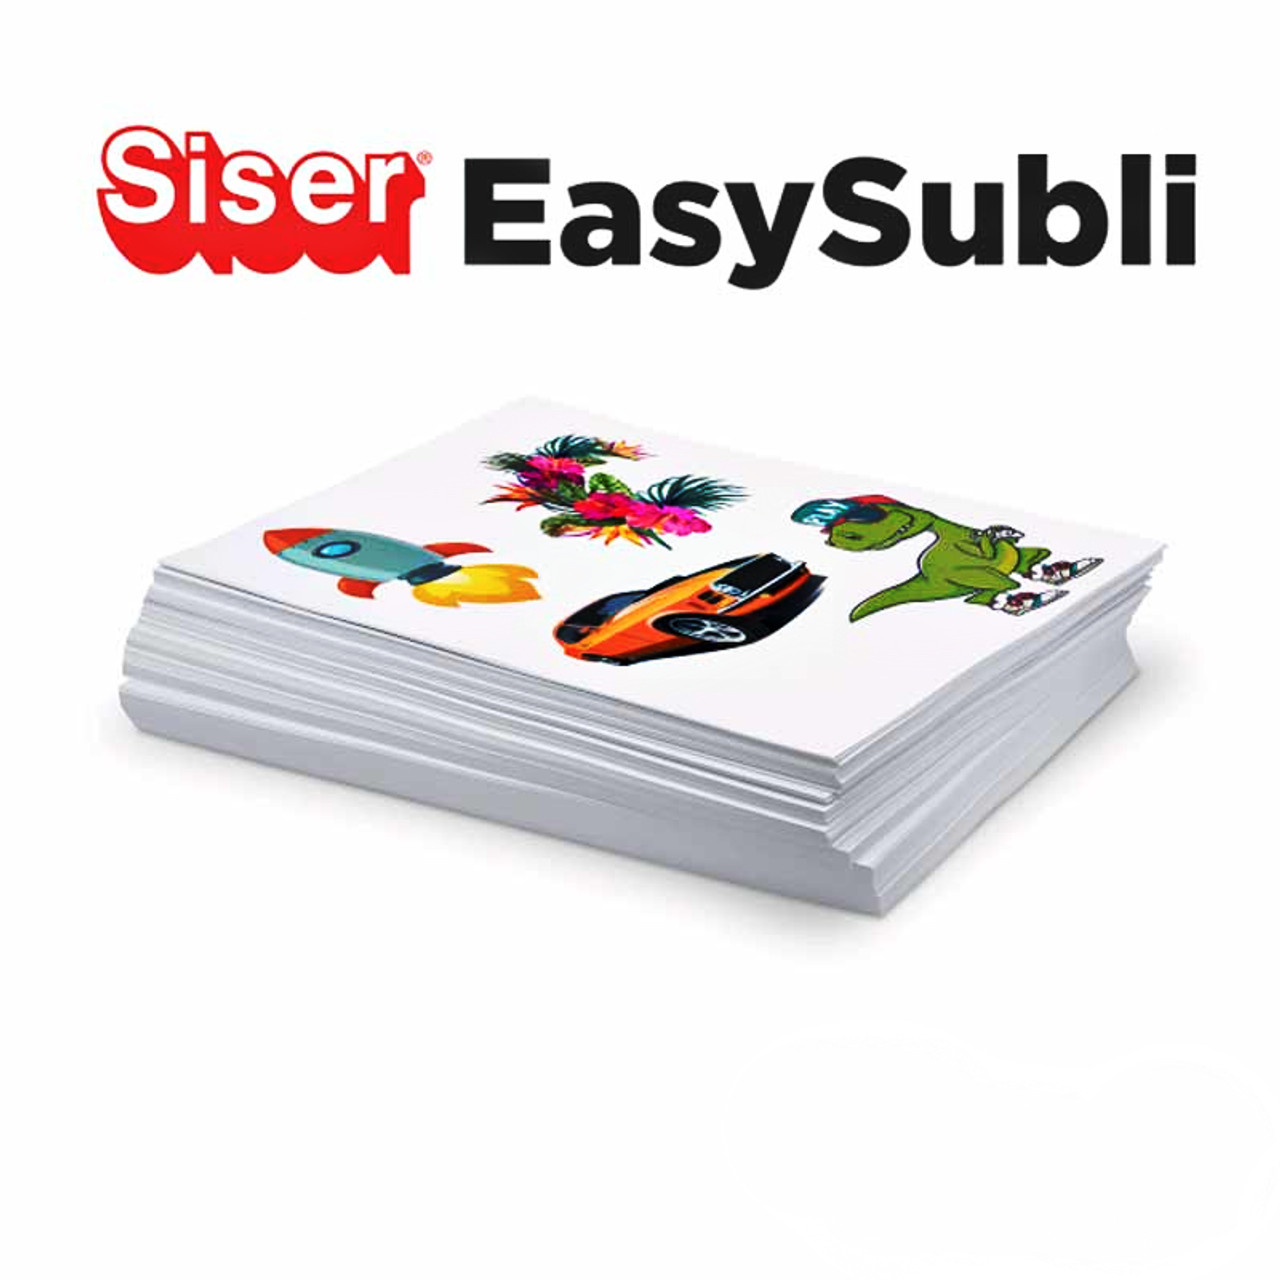 11X16.5 Siser EasySubli Mask Sheets